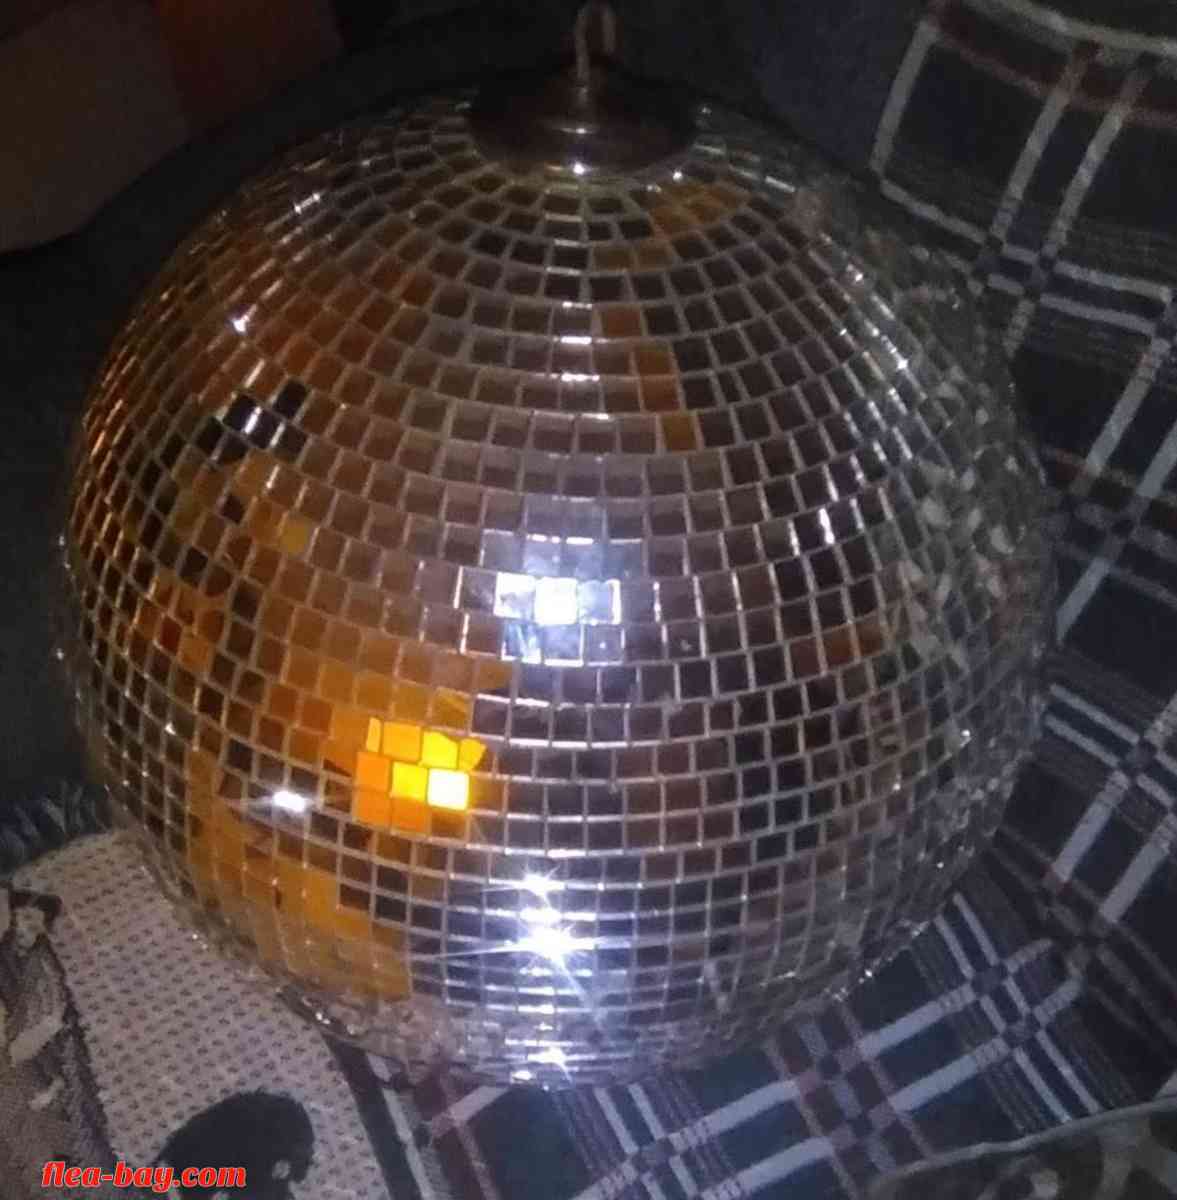 1970s Disco ball